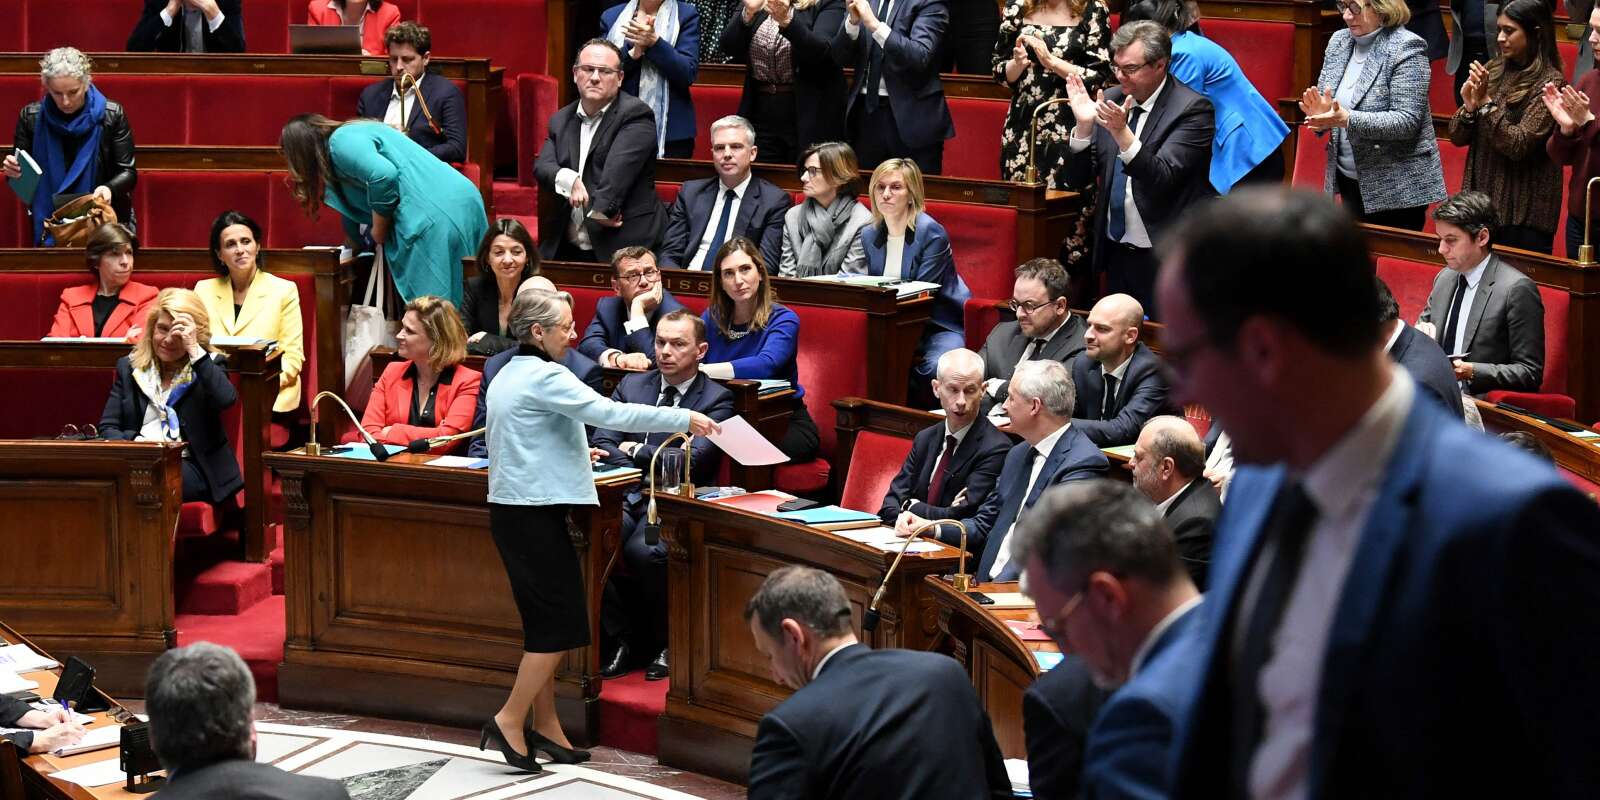 La première ministre Elisabeth Borne après avoir prononcé un discours avant le vote de deux motions de censure à l’Assemblée nationale française, le 20 mars 2023.